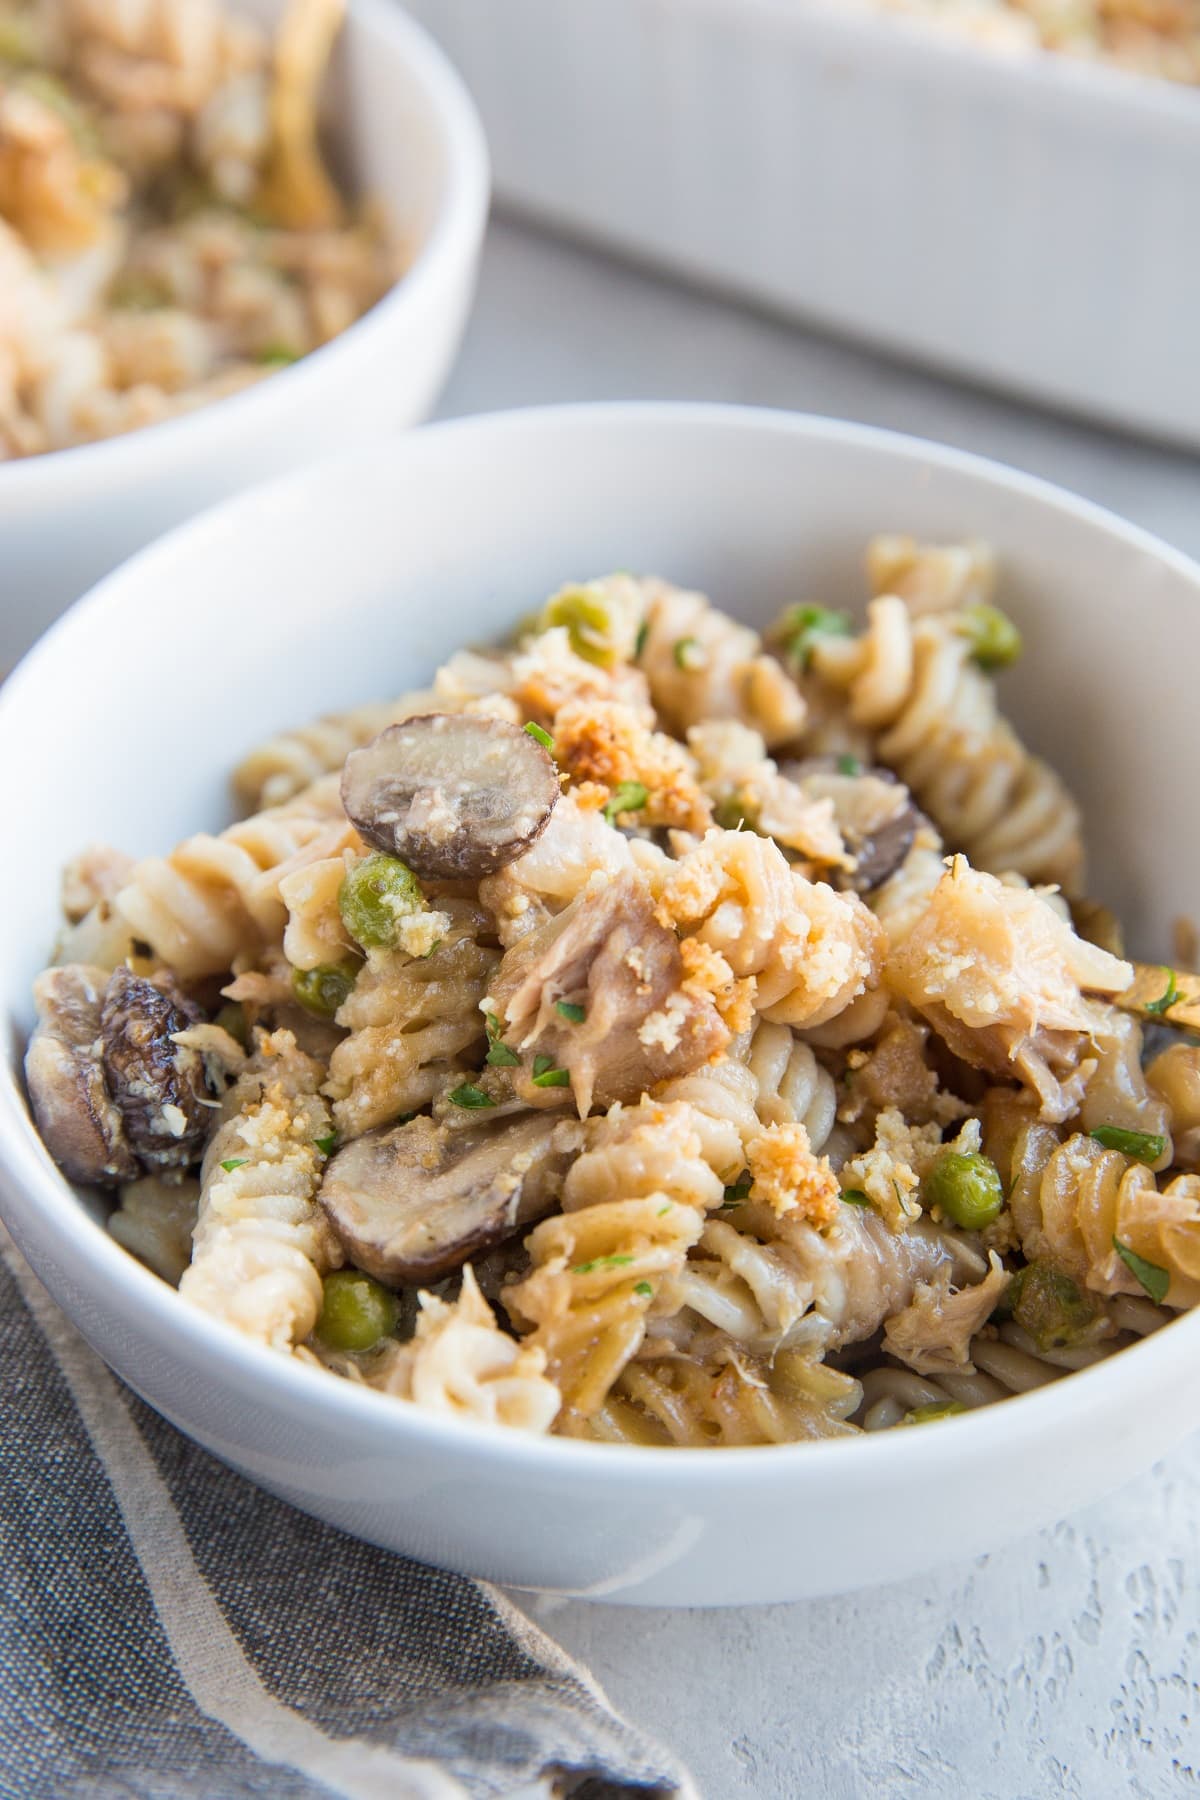 Tuna Casserole Recipe - no milk or cream, made with gluten-free pasta noodles. Rich, delicious healthy casserole recipe